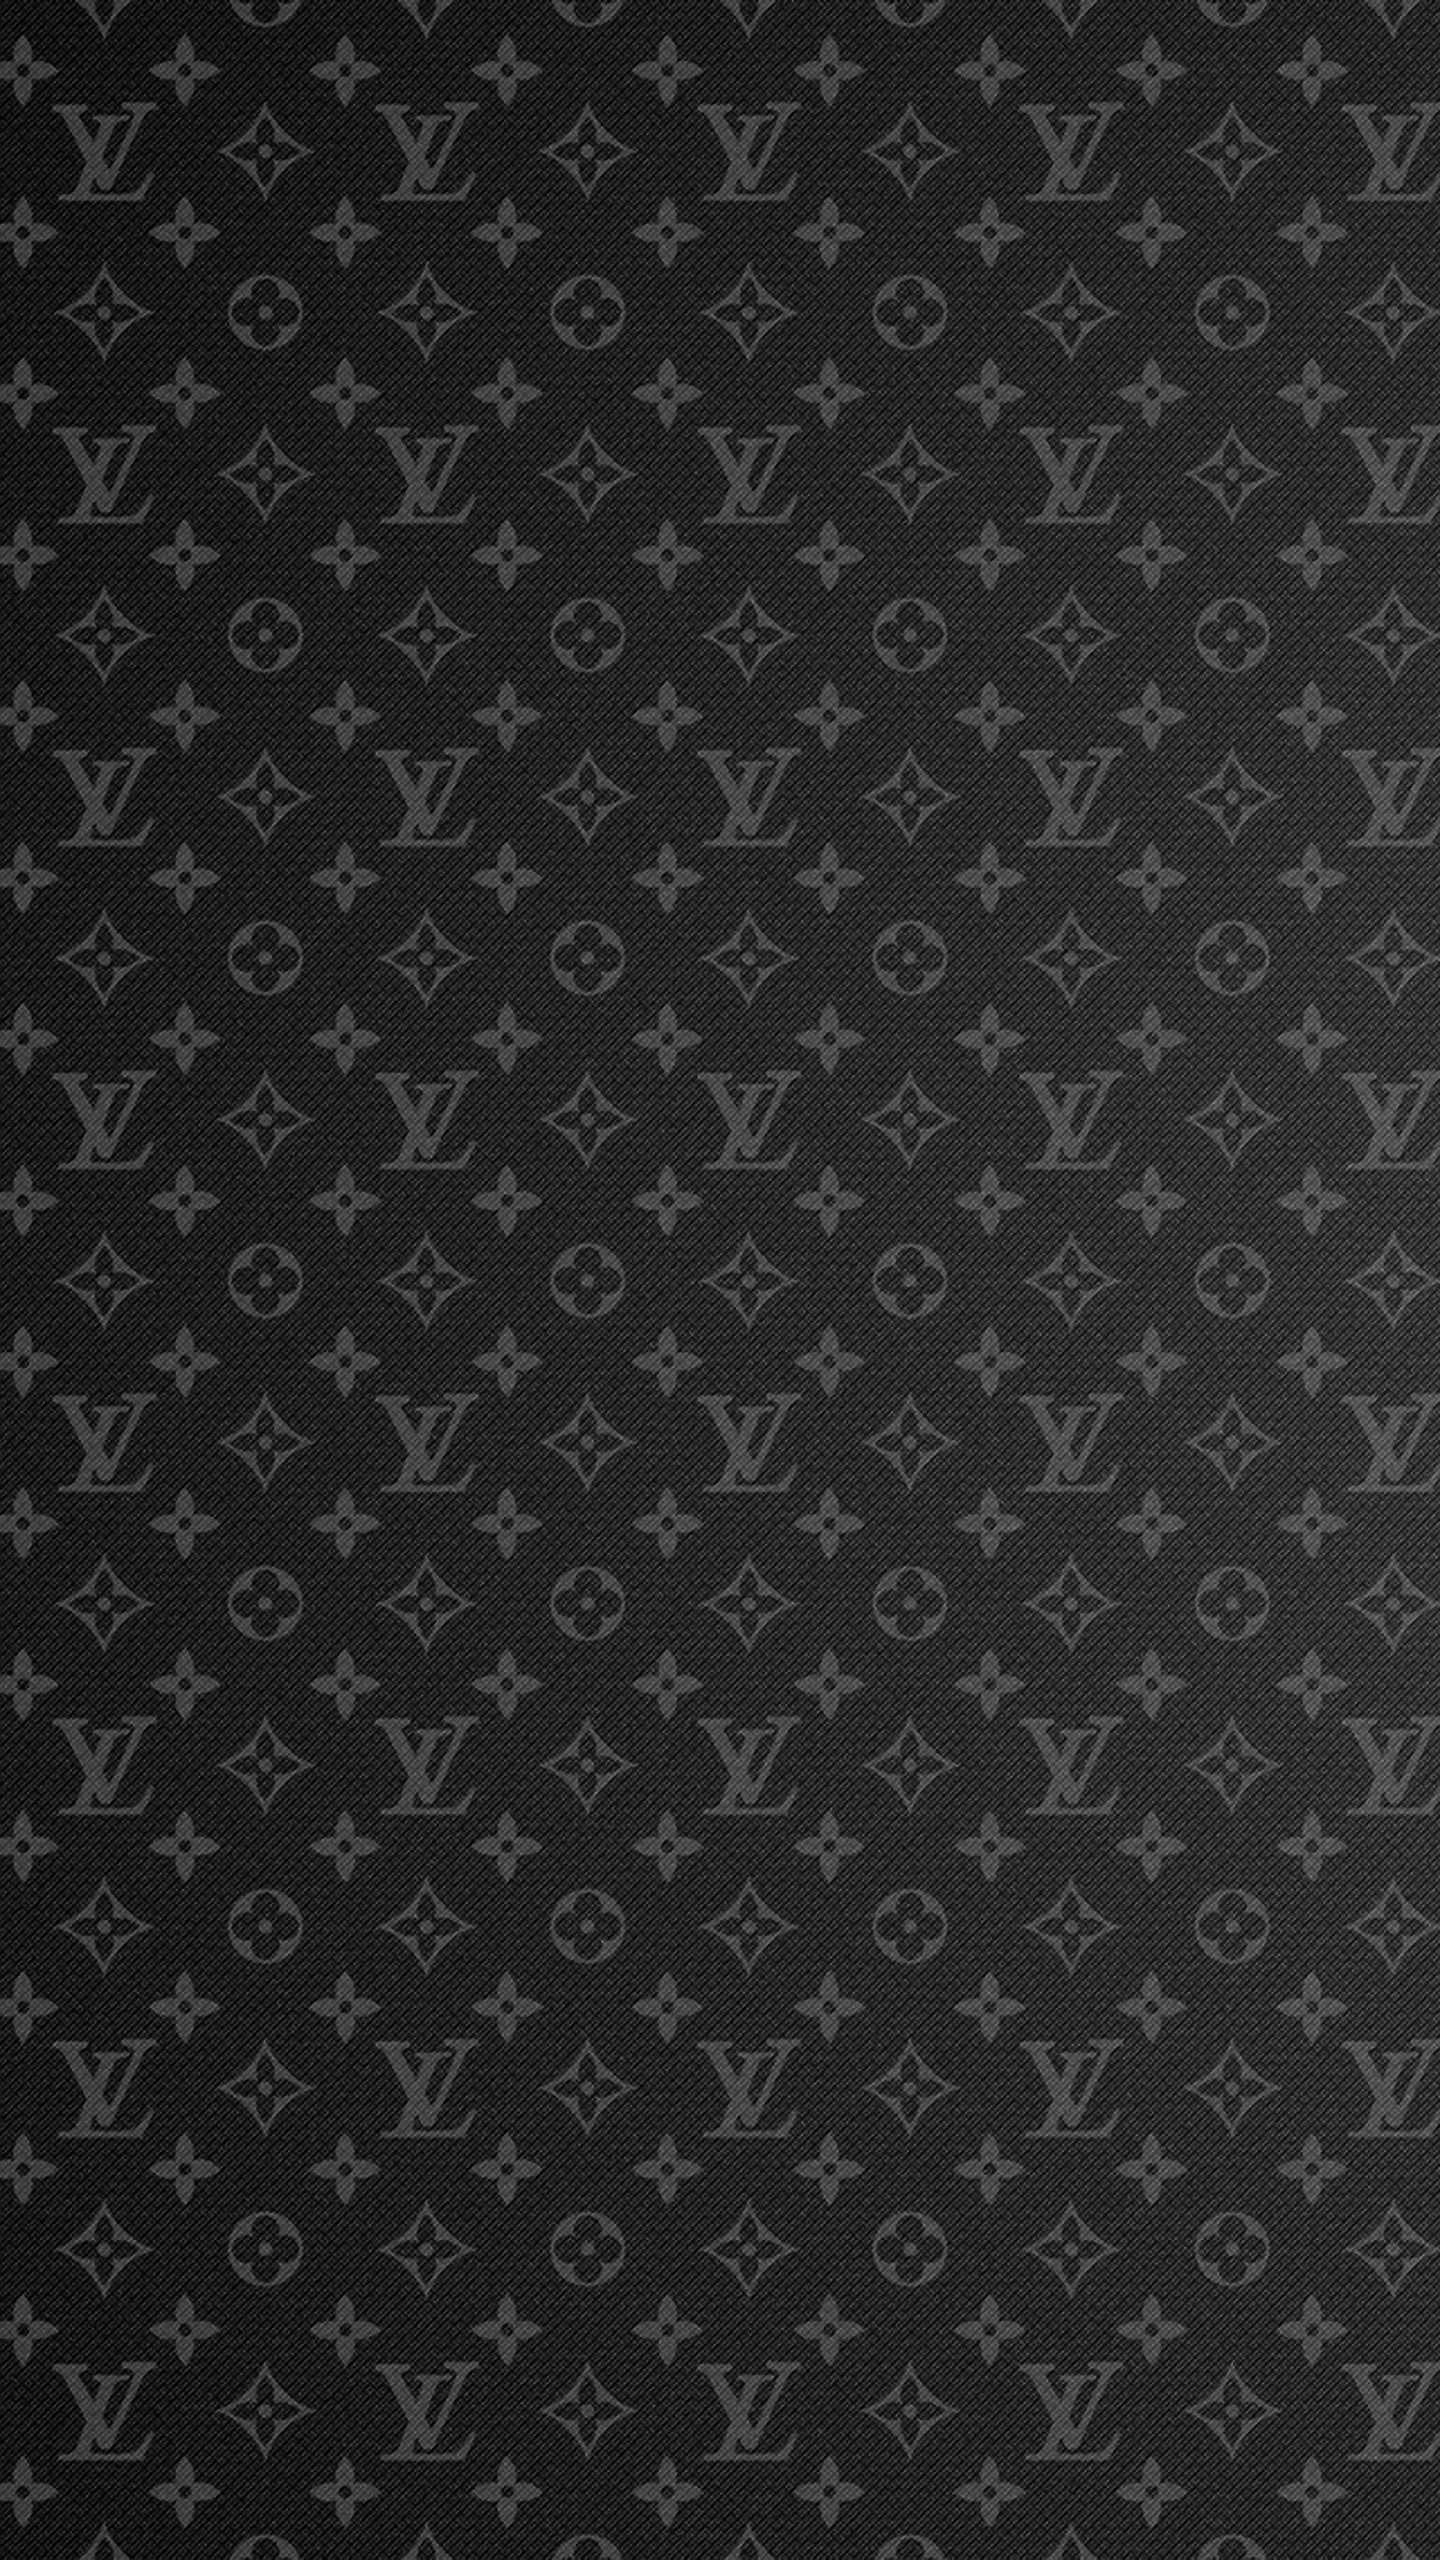 33+] Louis Vuitton iPhone Wallpaper